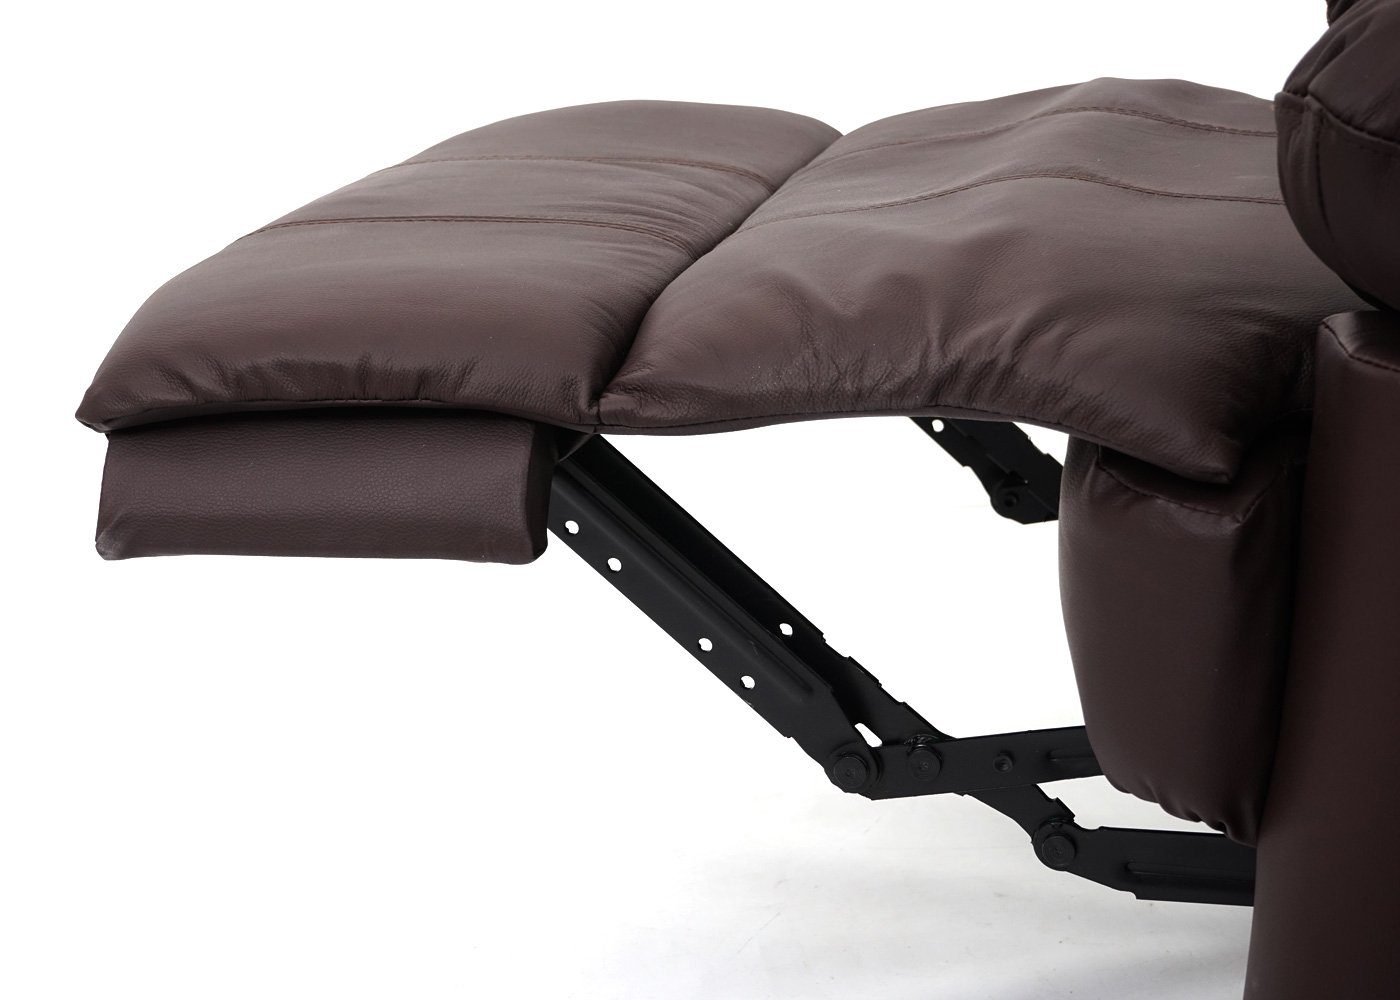 165 MCW TV-Sessel MCW-G15, verstellbar, Liegefläche: Verstellbare Liegefunktion Rückenfläche, braun cm, Fußstütze